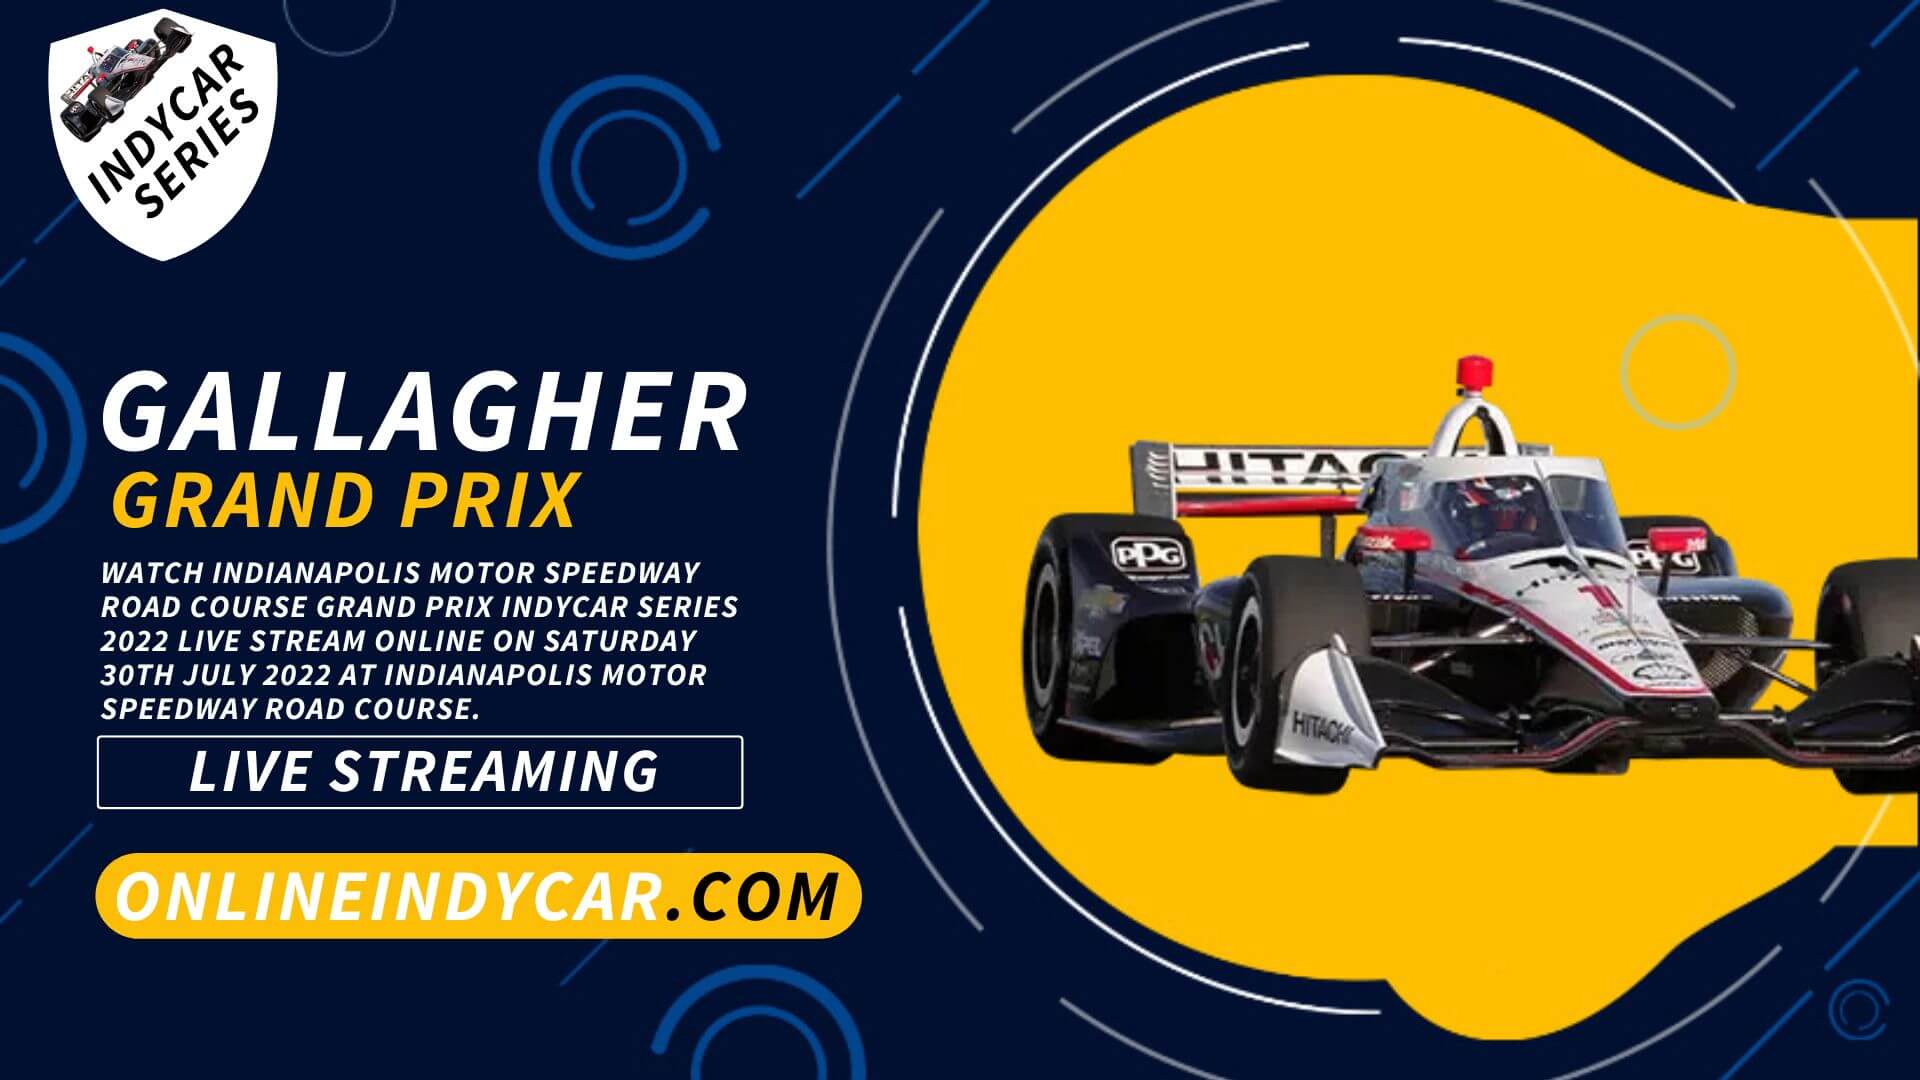 Gallagher Indycar Grand Prix Live Stream